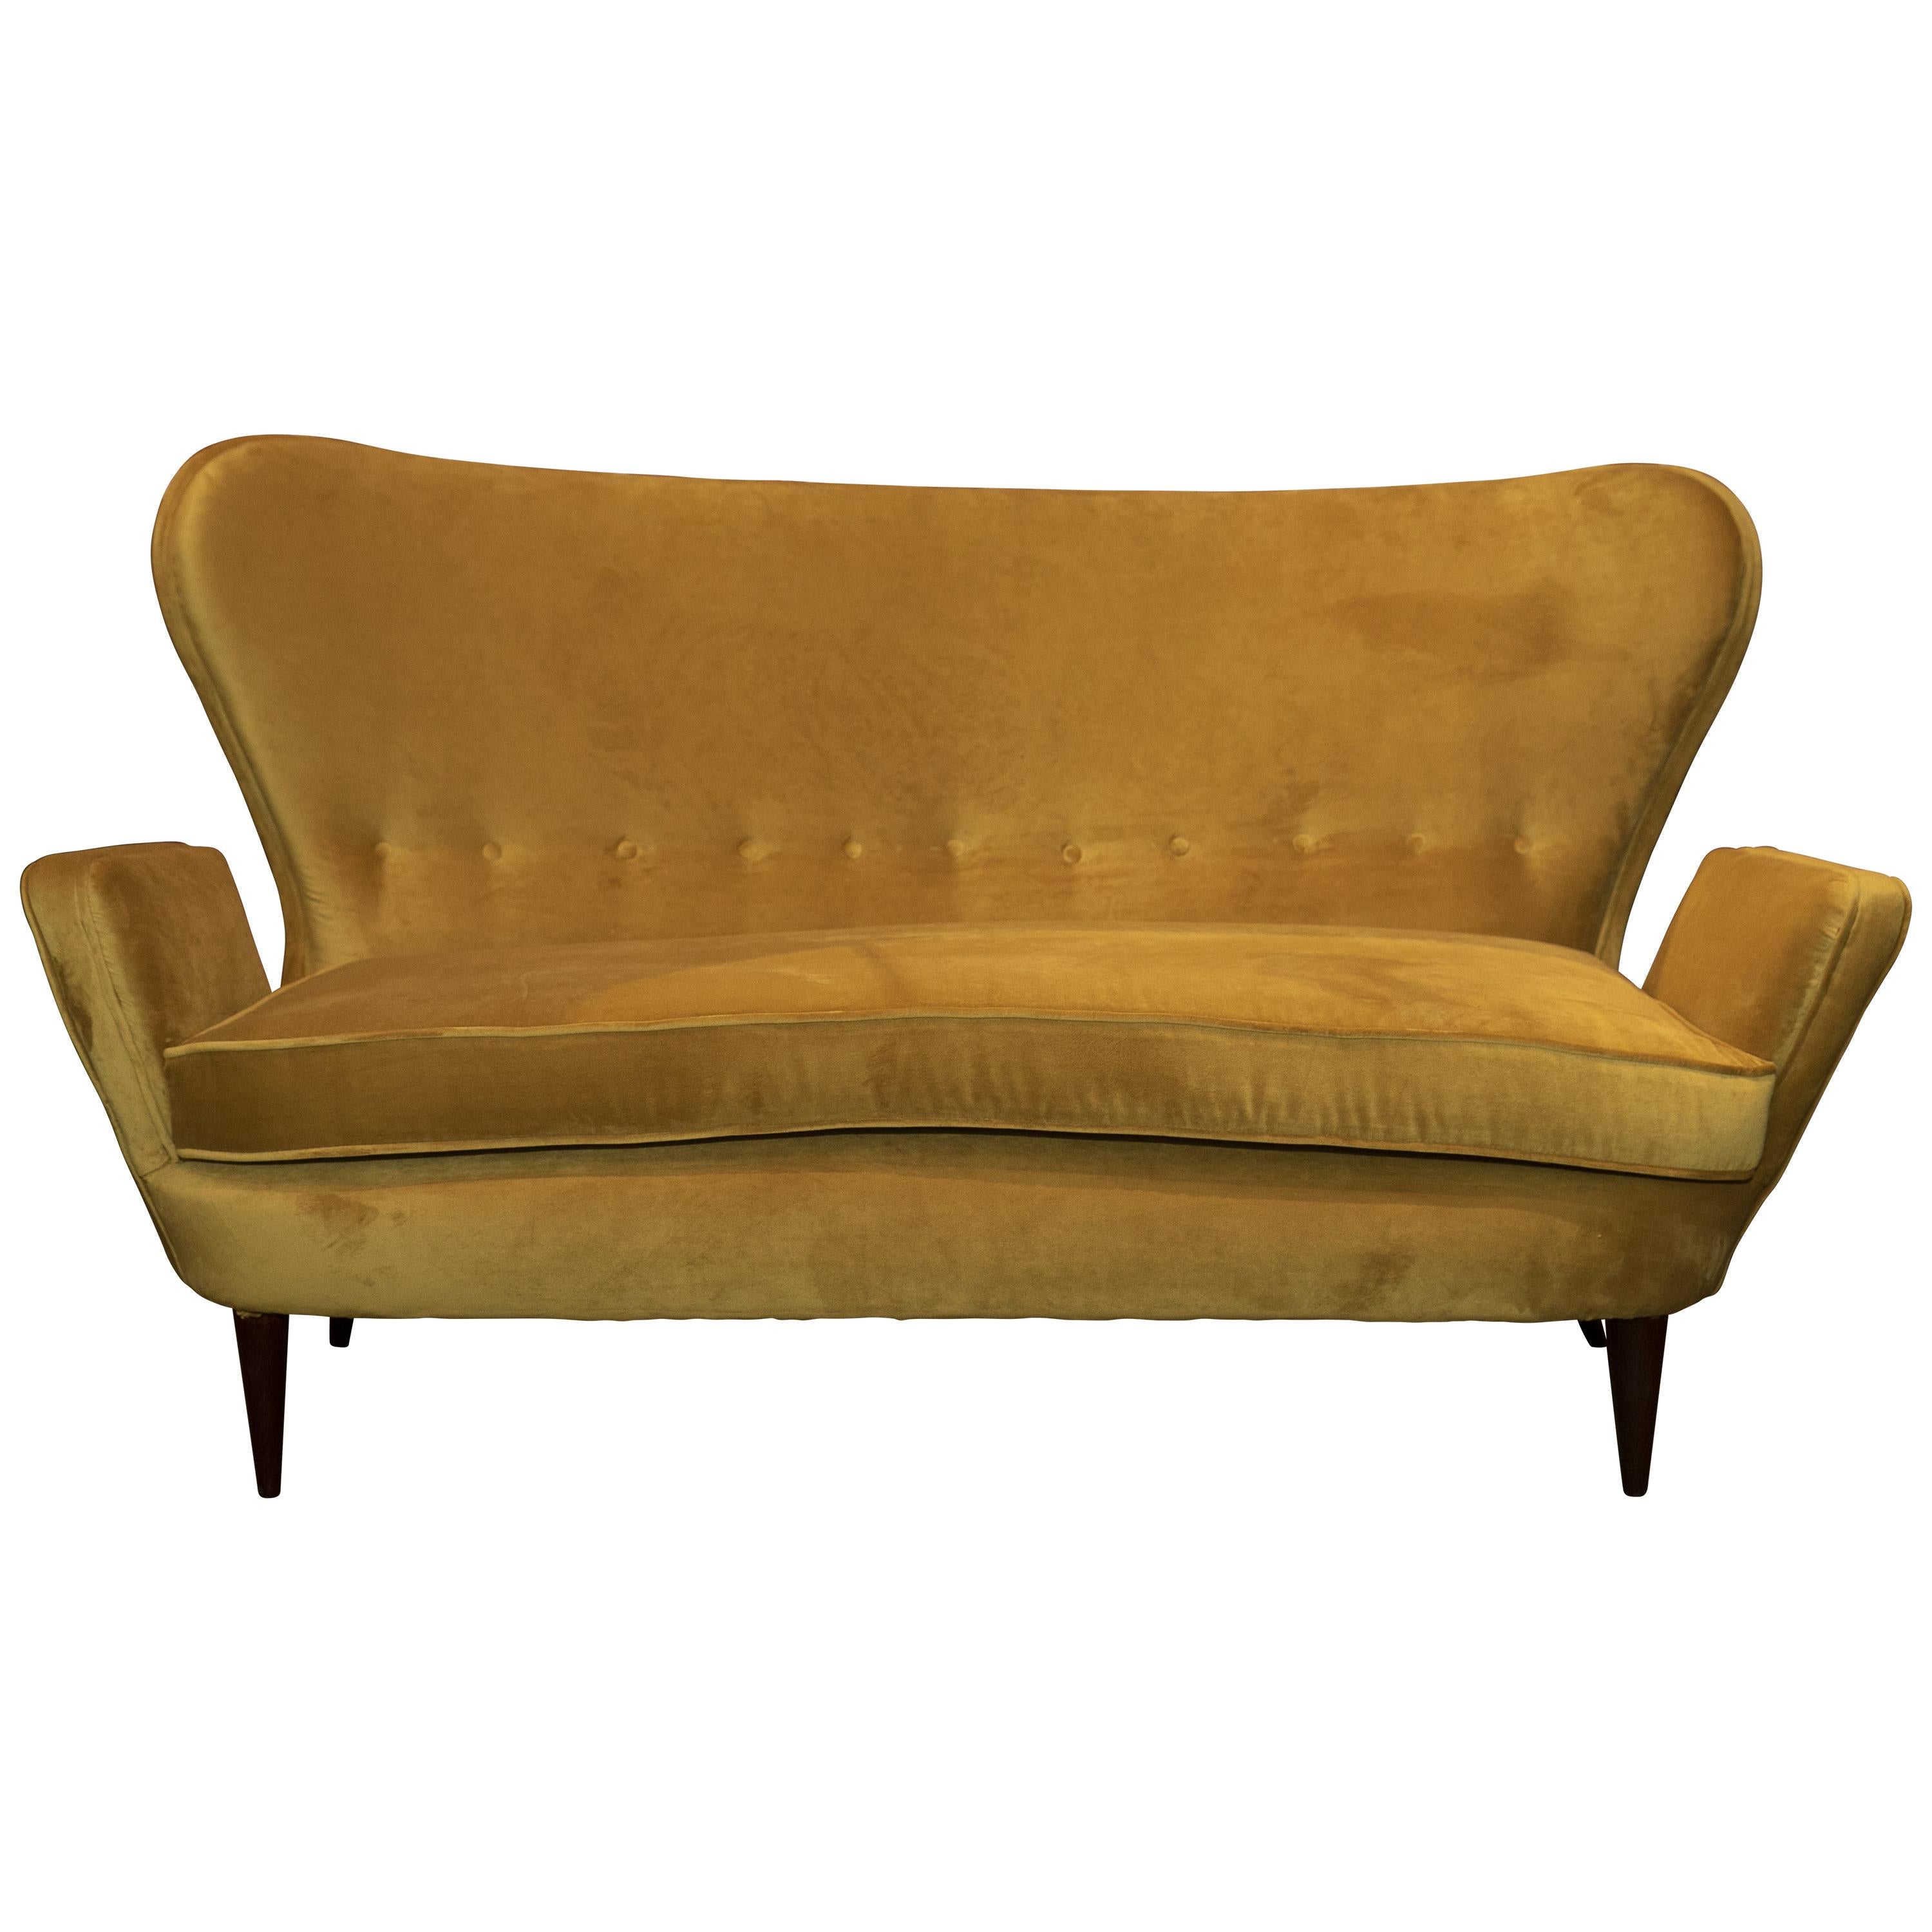 1980er Sofa und Sessel, neue ockerfarbene Beschichtung und Polsterung, Made in Italy 1980er Jahre